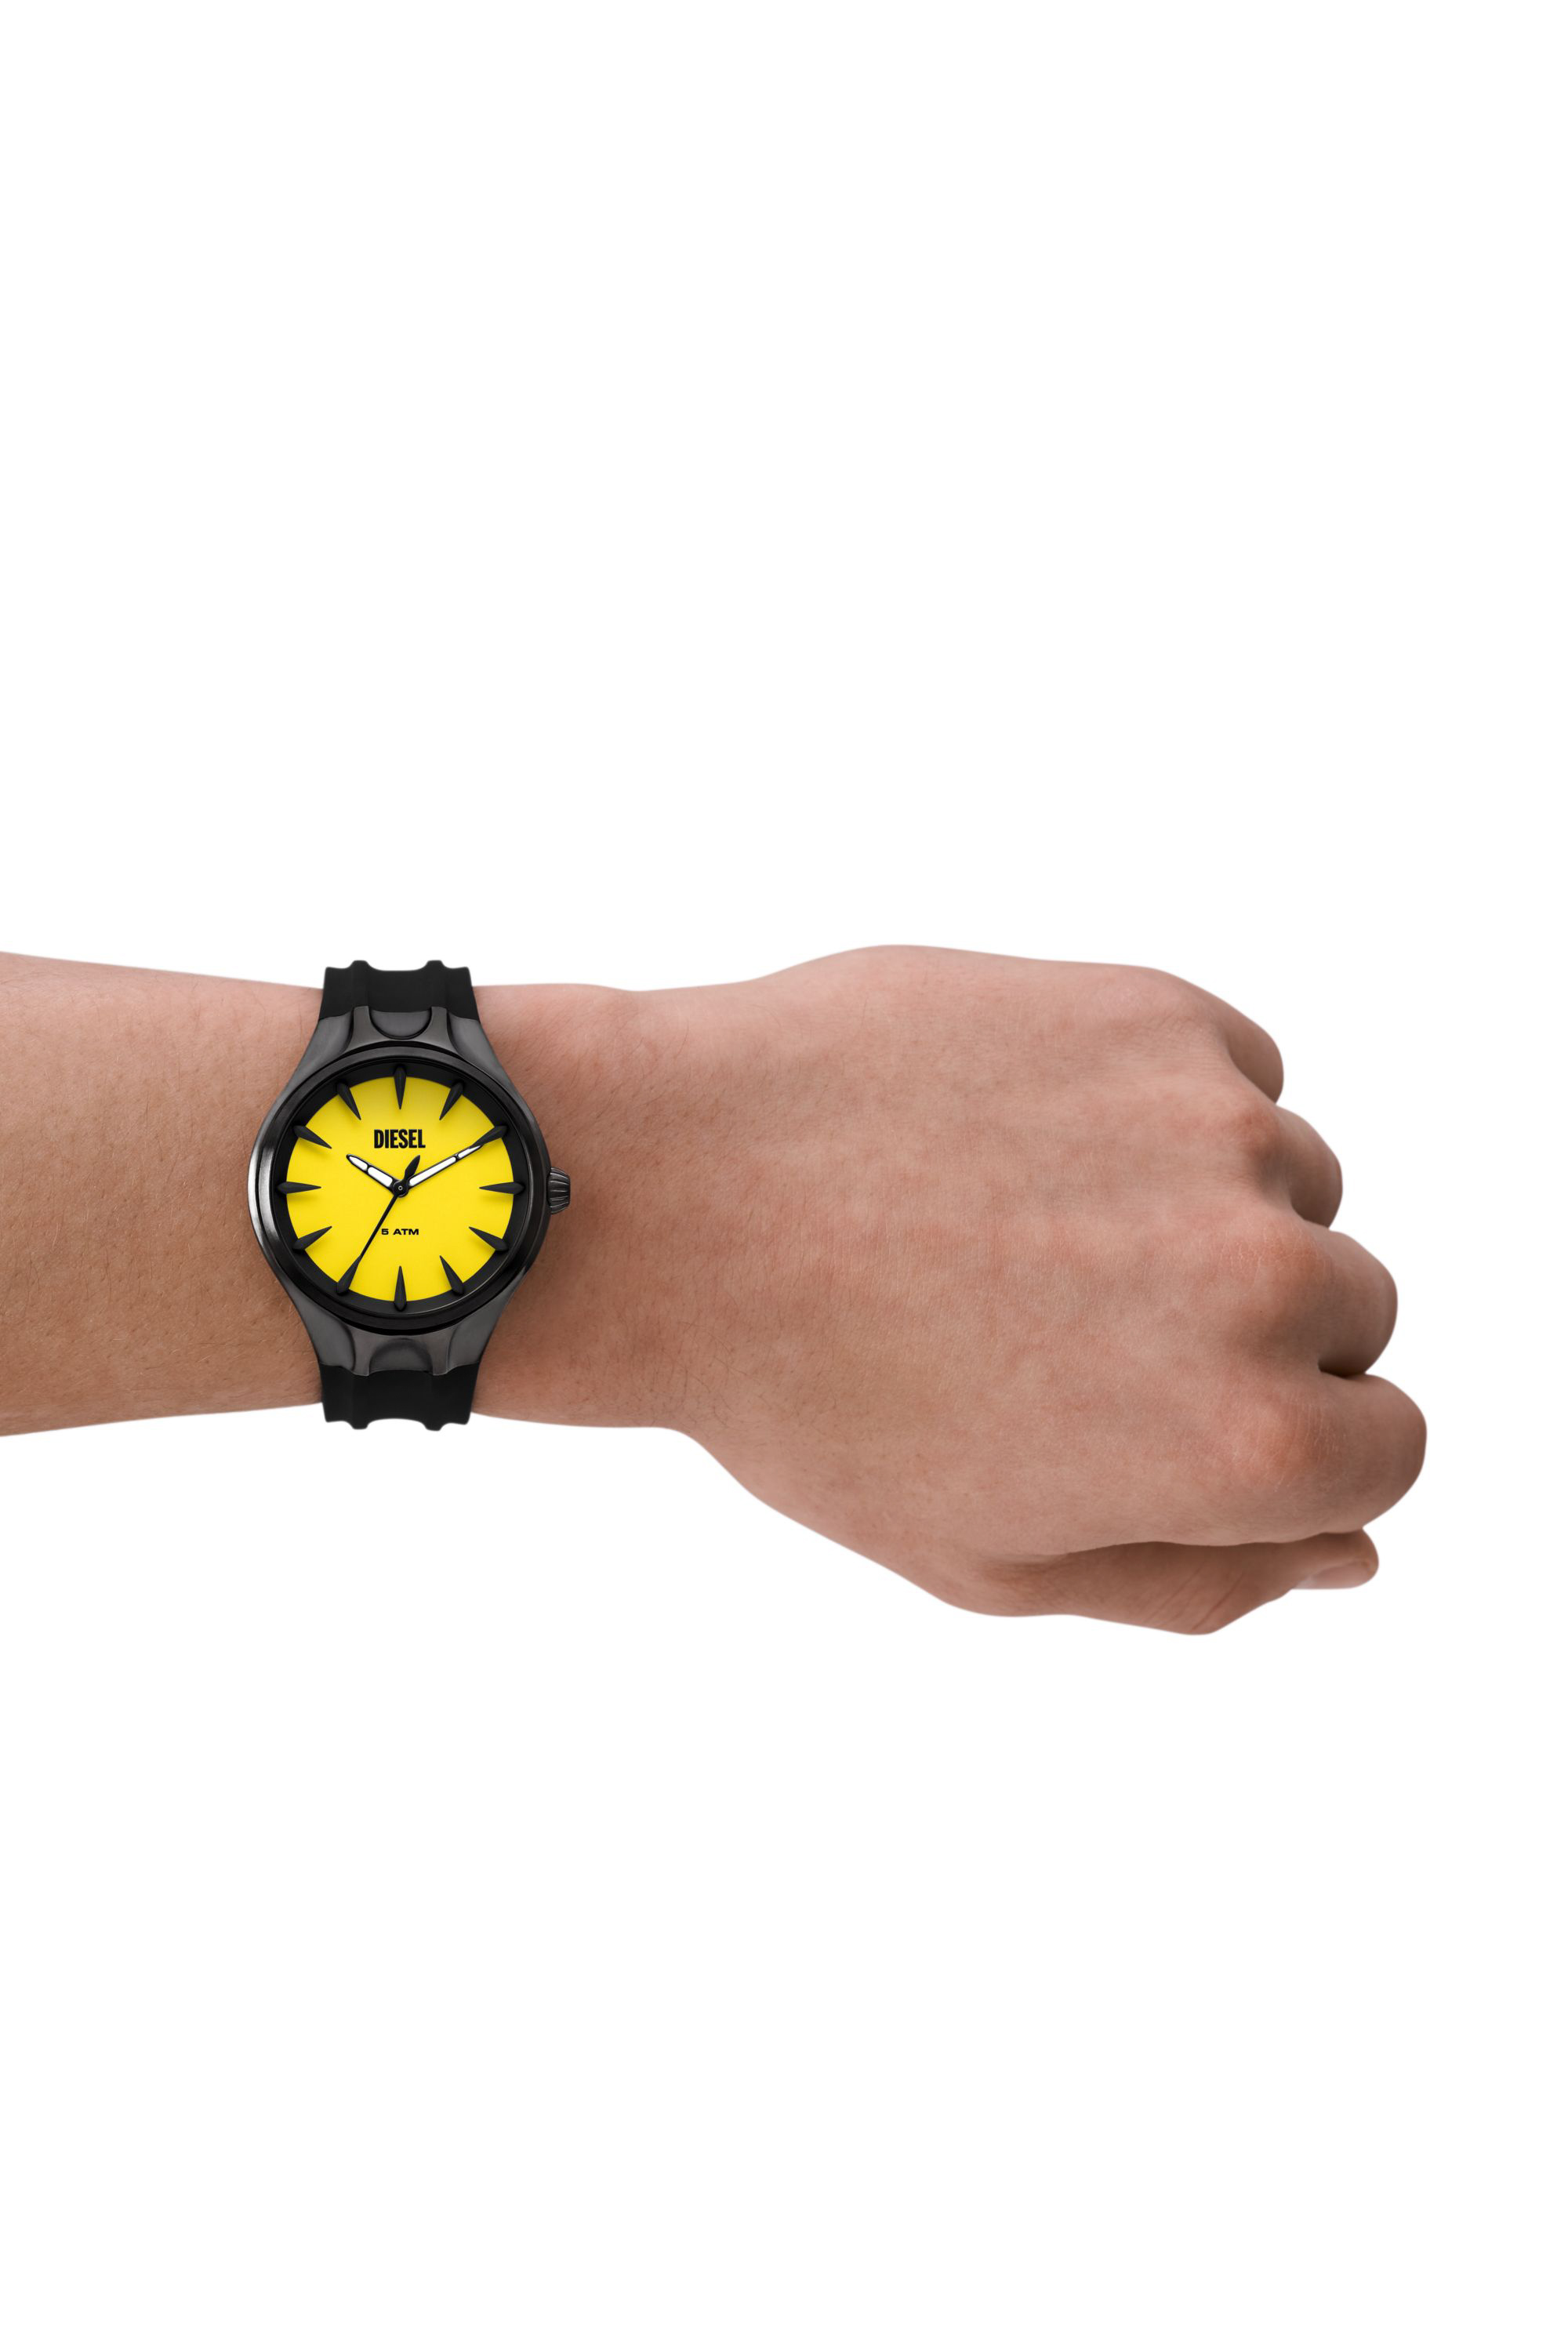 Diesel - DZ2201, Male Streamline three-hand black silicone watch in ブラック - Image 4